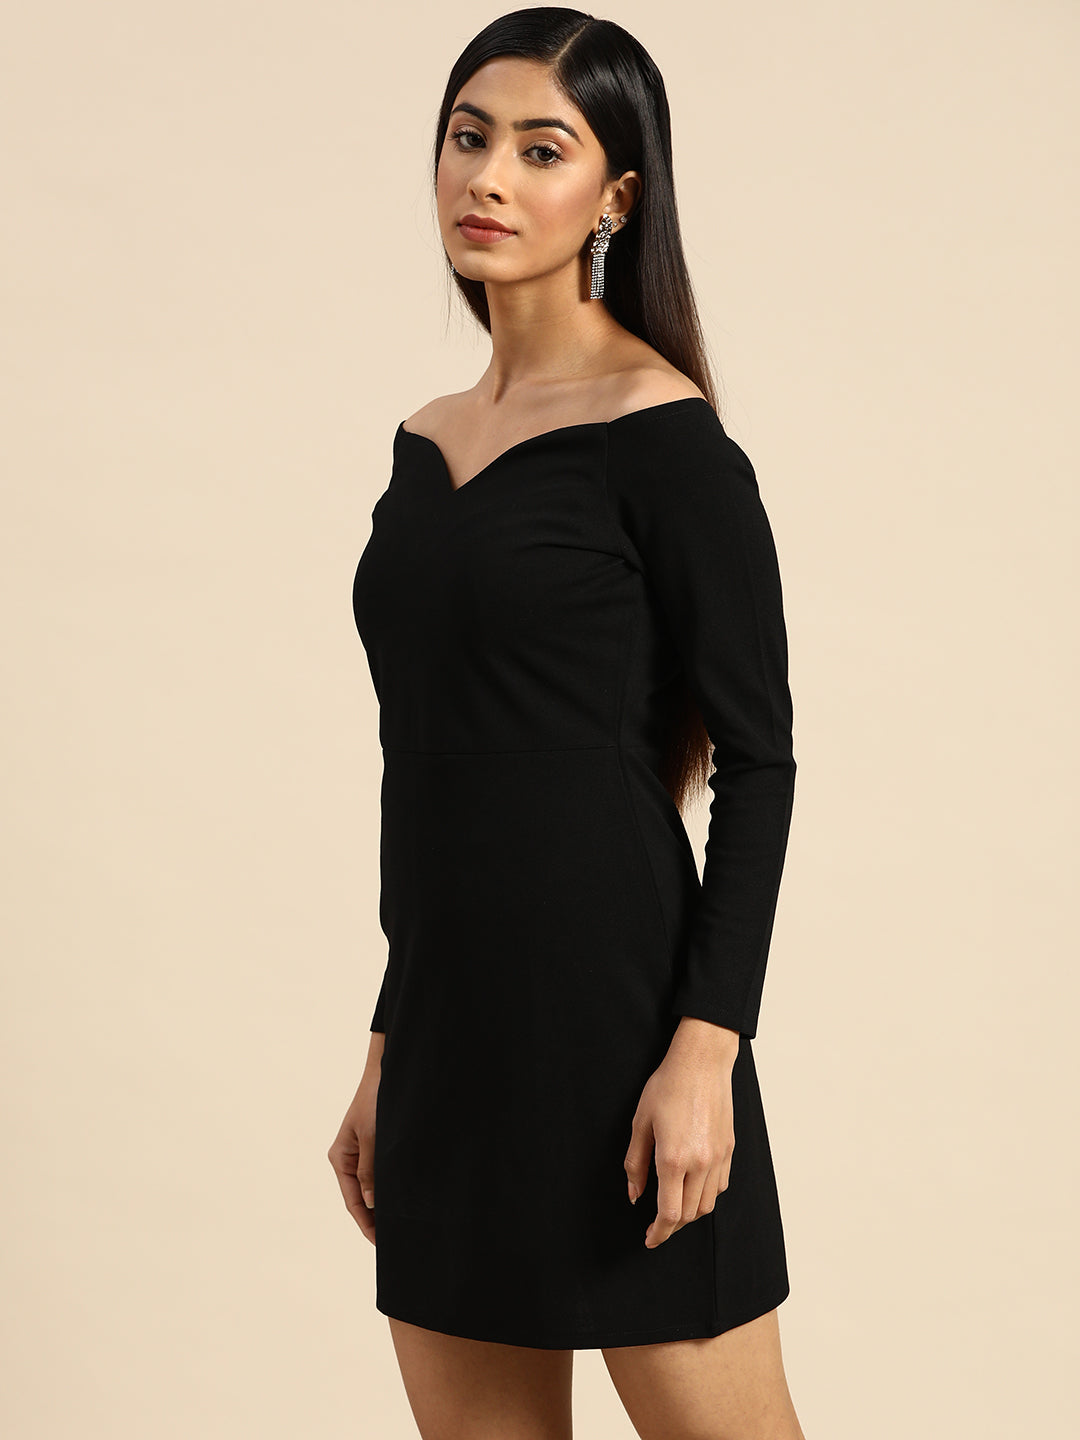 Athena Black Off-Shoulder Bodycon Dress - Athena Lifestyle